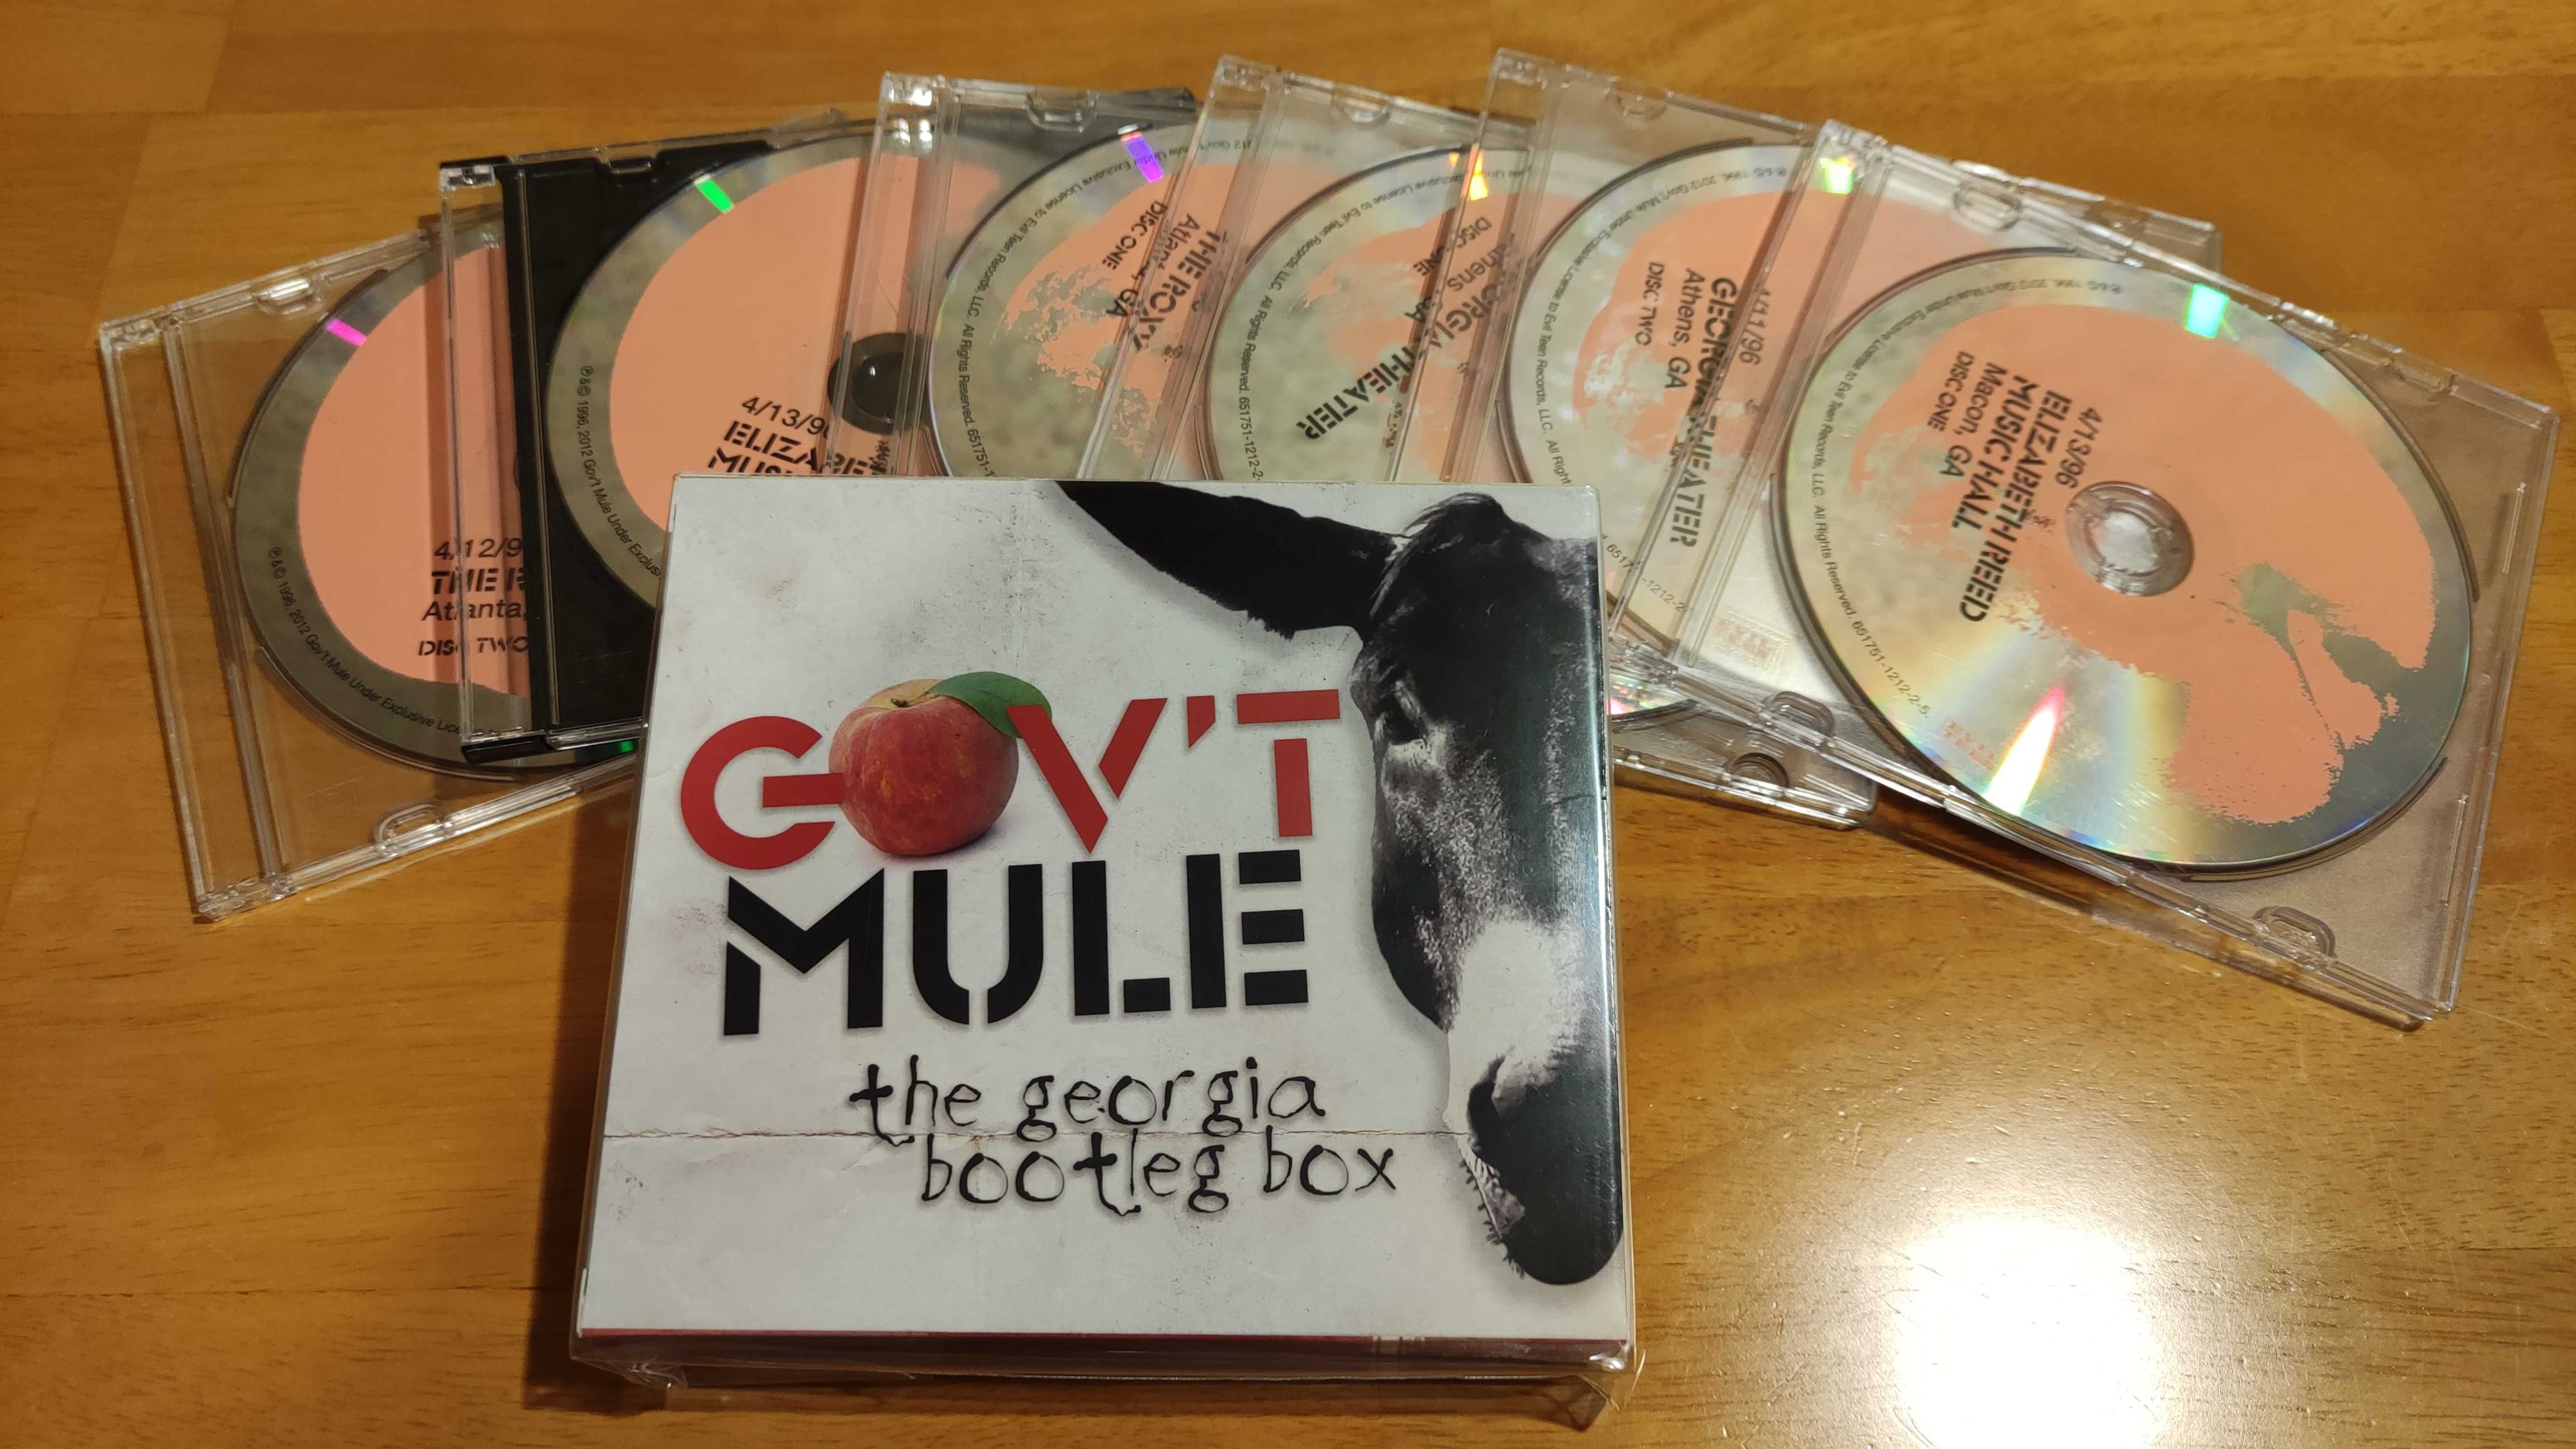 Gov't Mule "The Georgia Bootleg Box" - wydanie amerykańskie